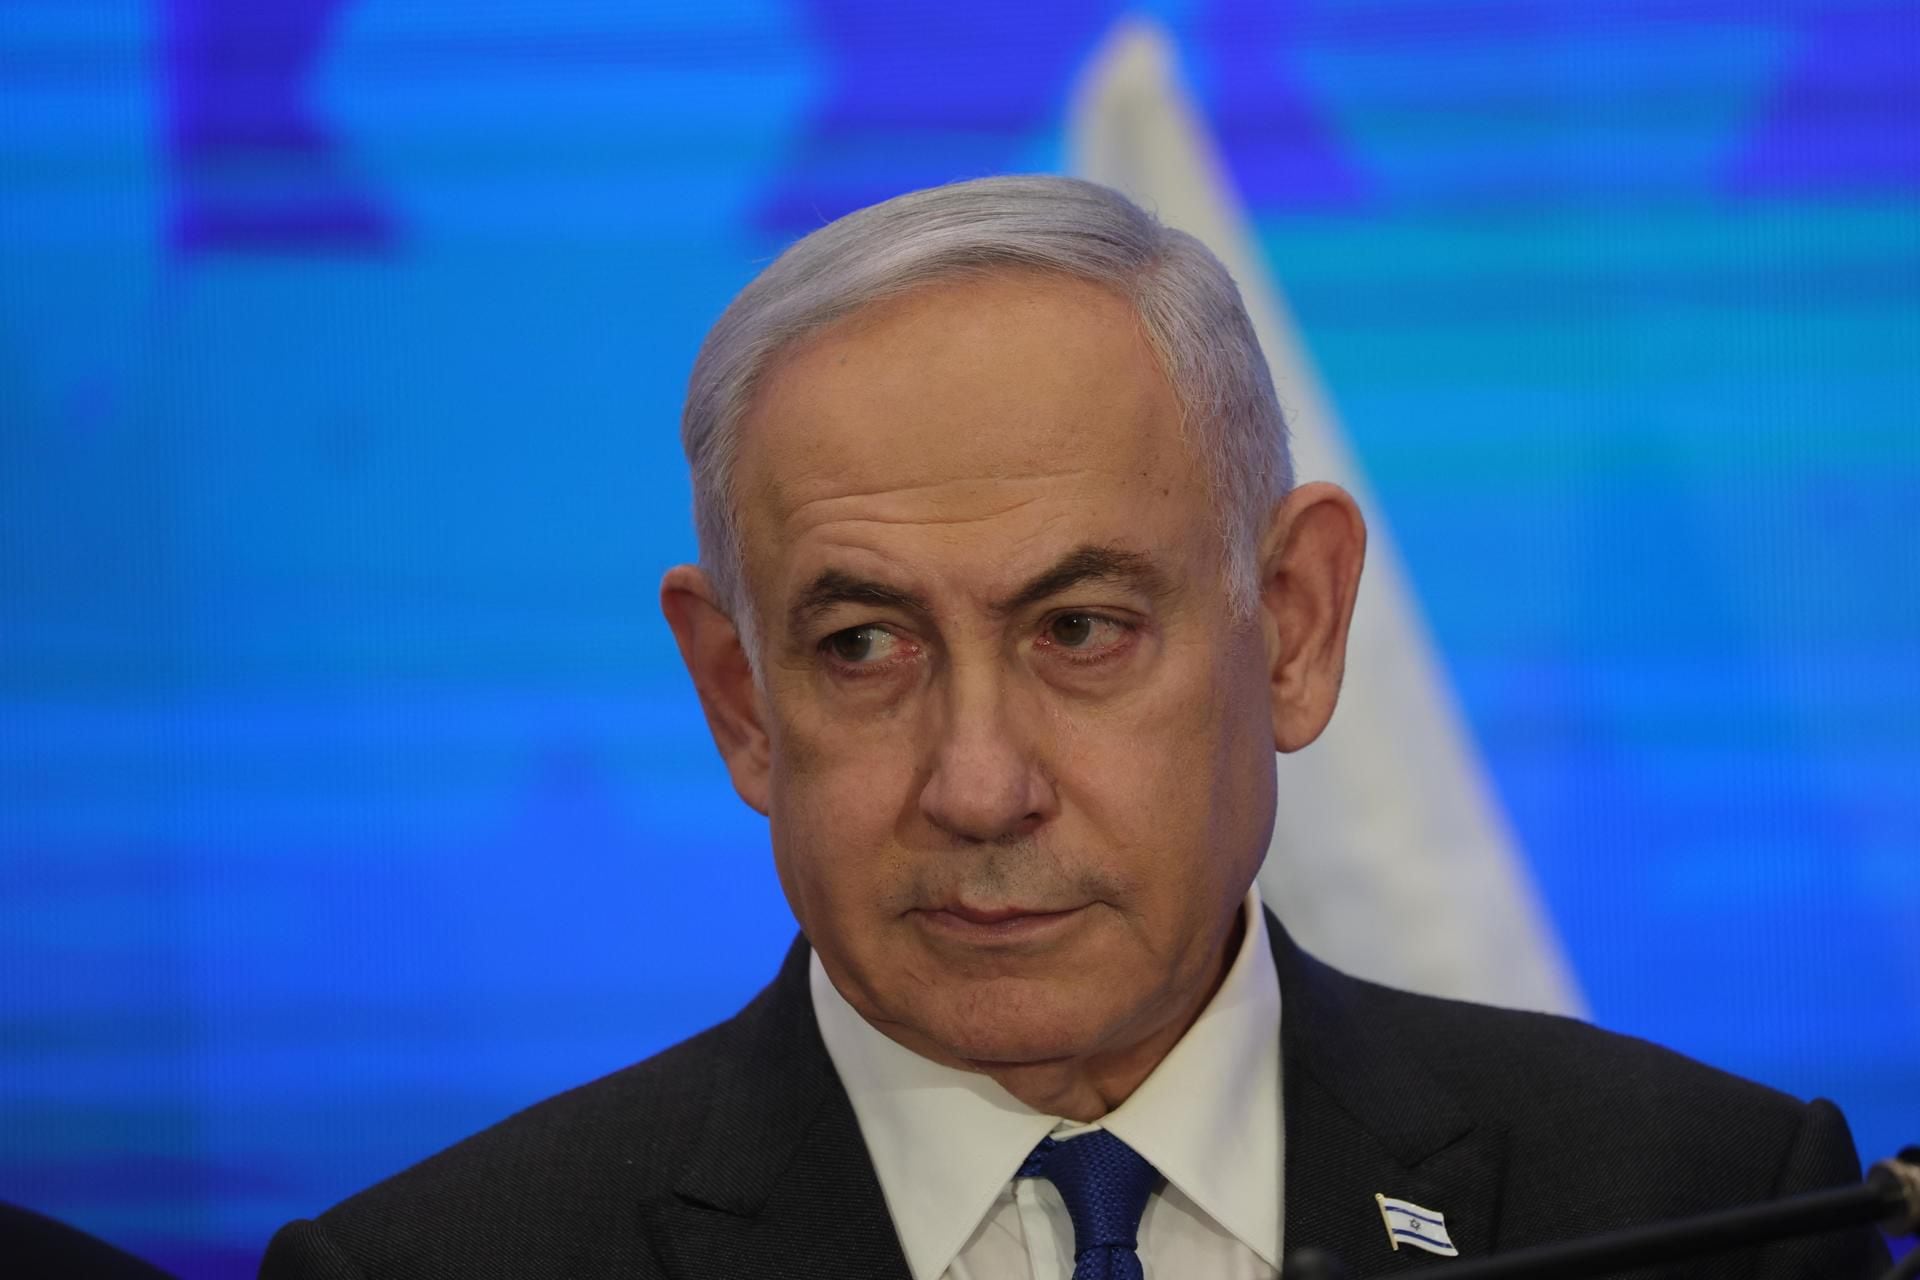 Abogados de Chile denuncian a Netanyahu en CPI por genocidio y crímenes de guerra en Gaza